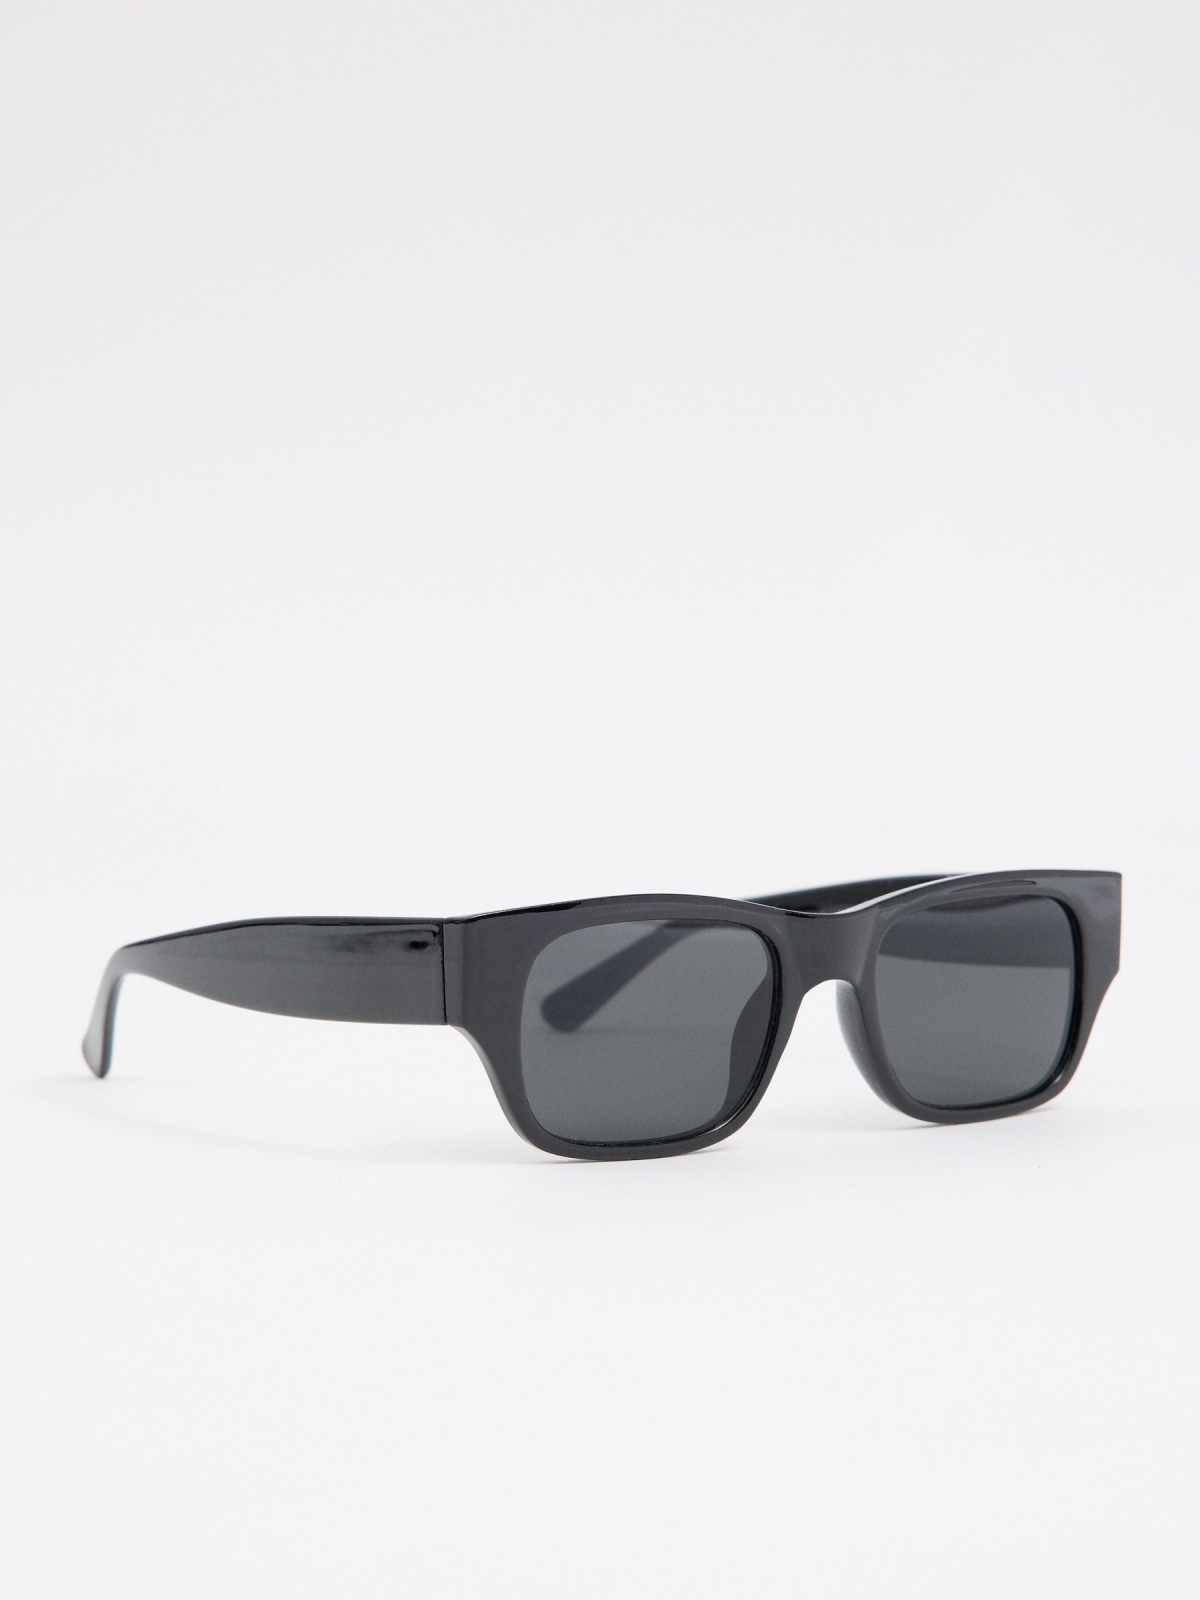 Óculos de sol com armação preta preto primeiro plano com modelo